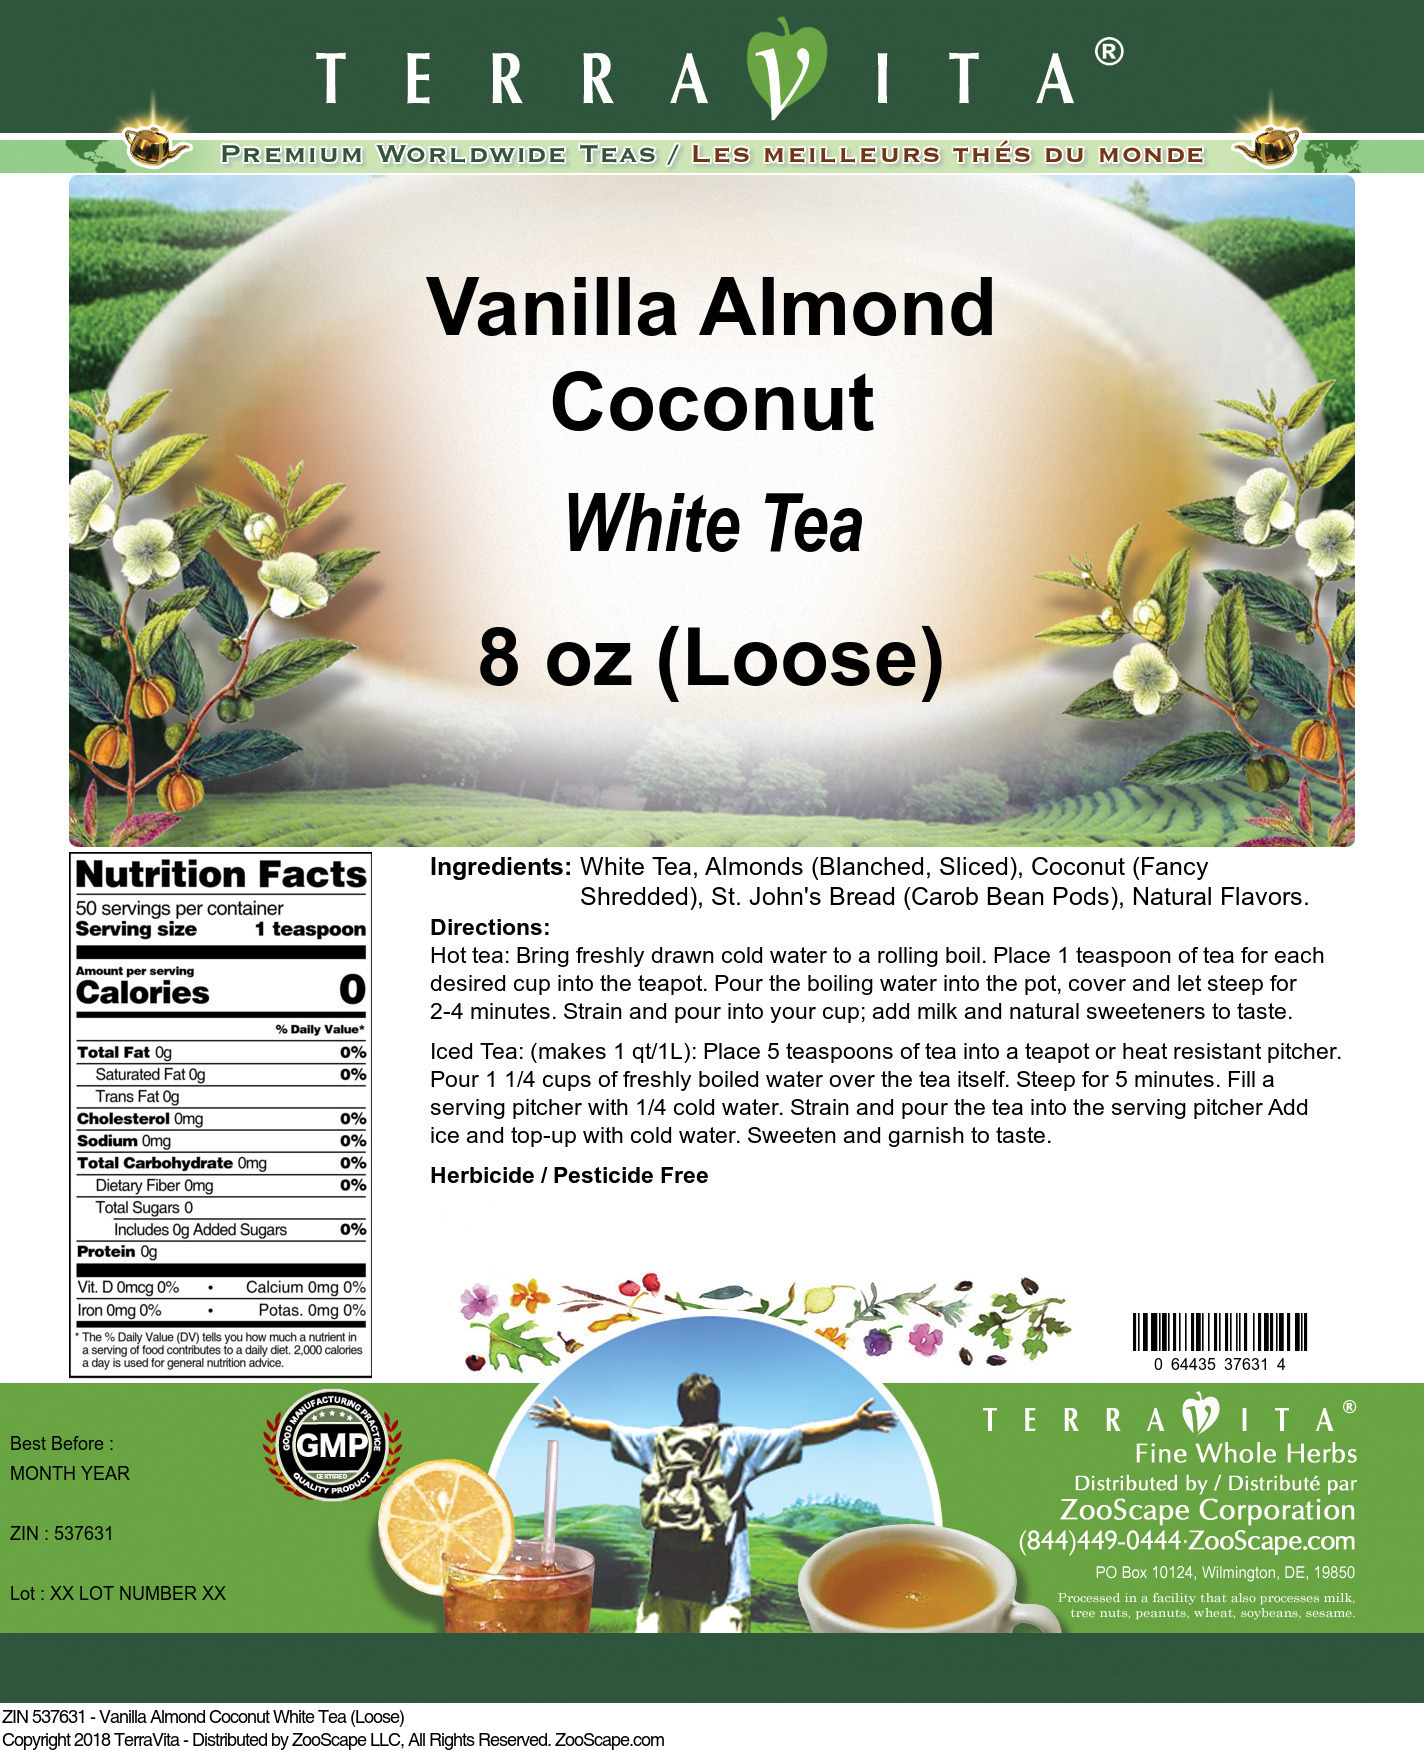 Vanilla Almond Coconut White Tea (Loose) - Label